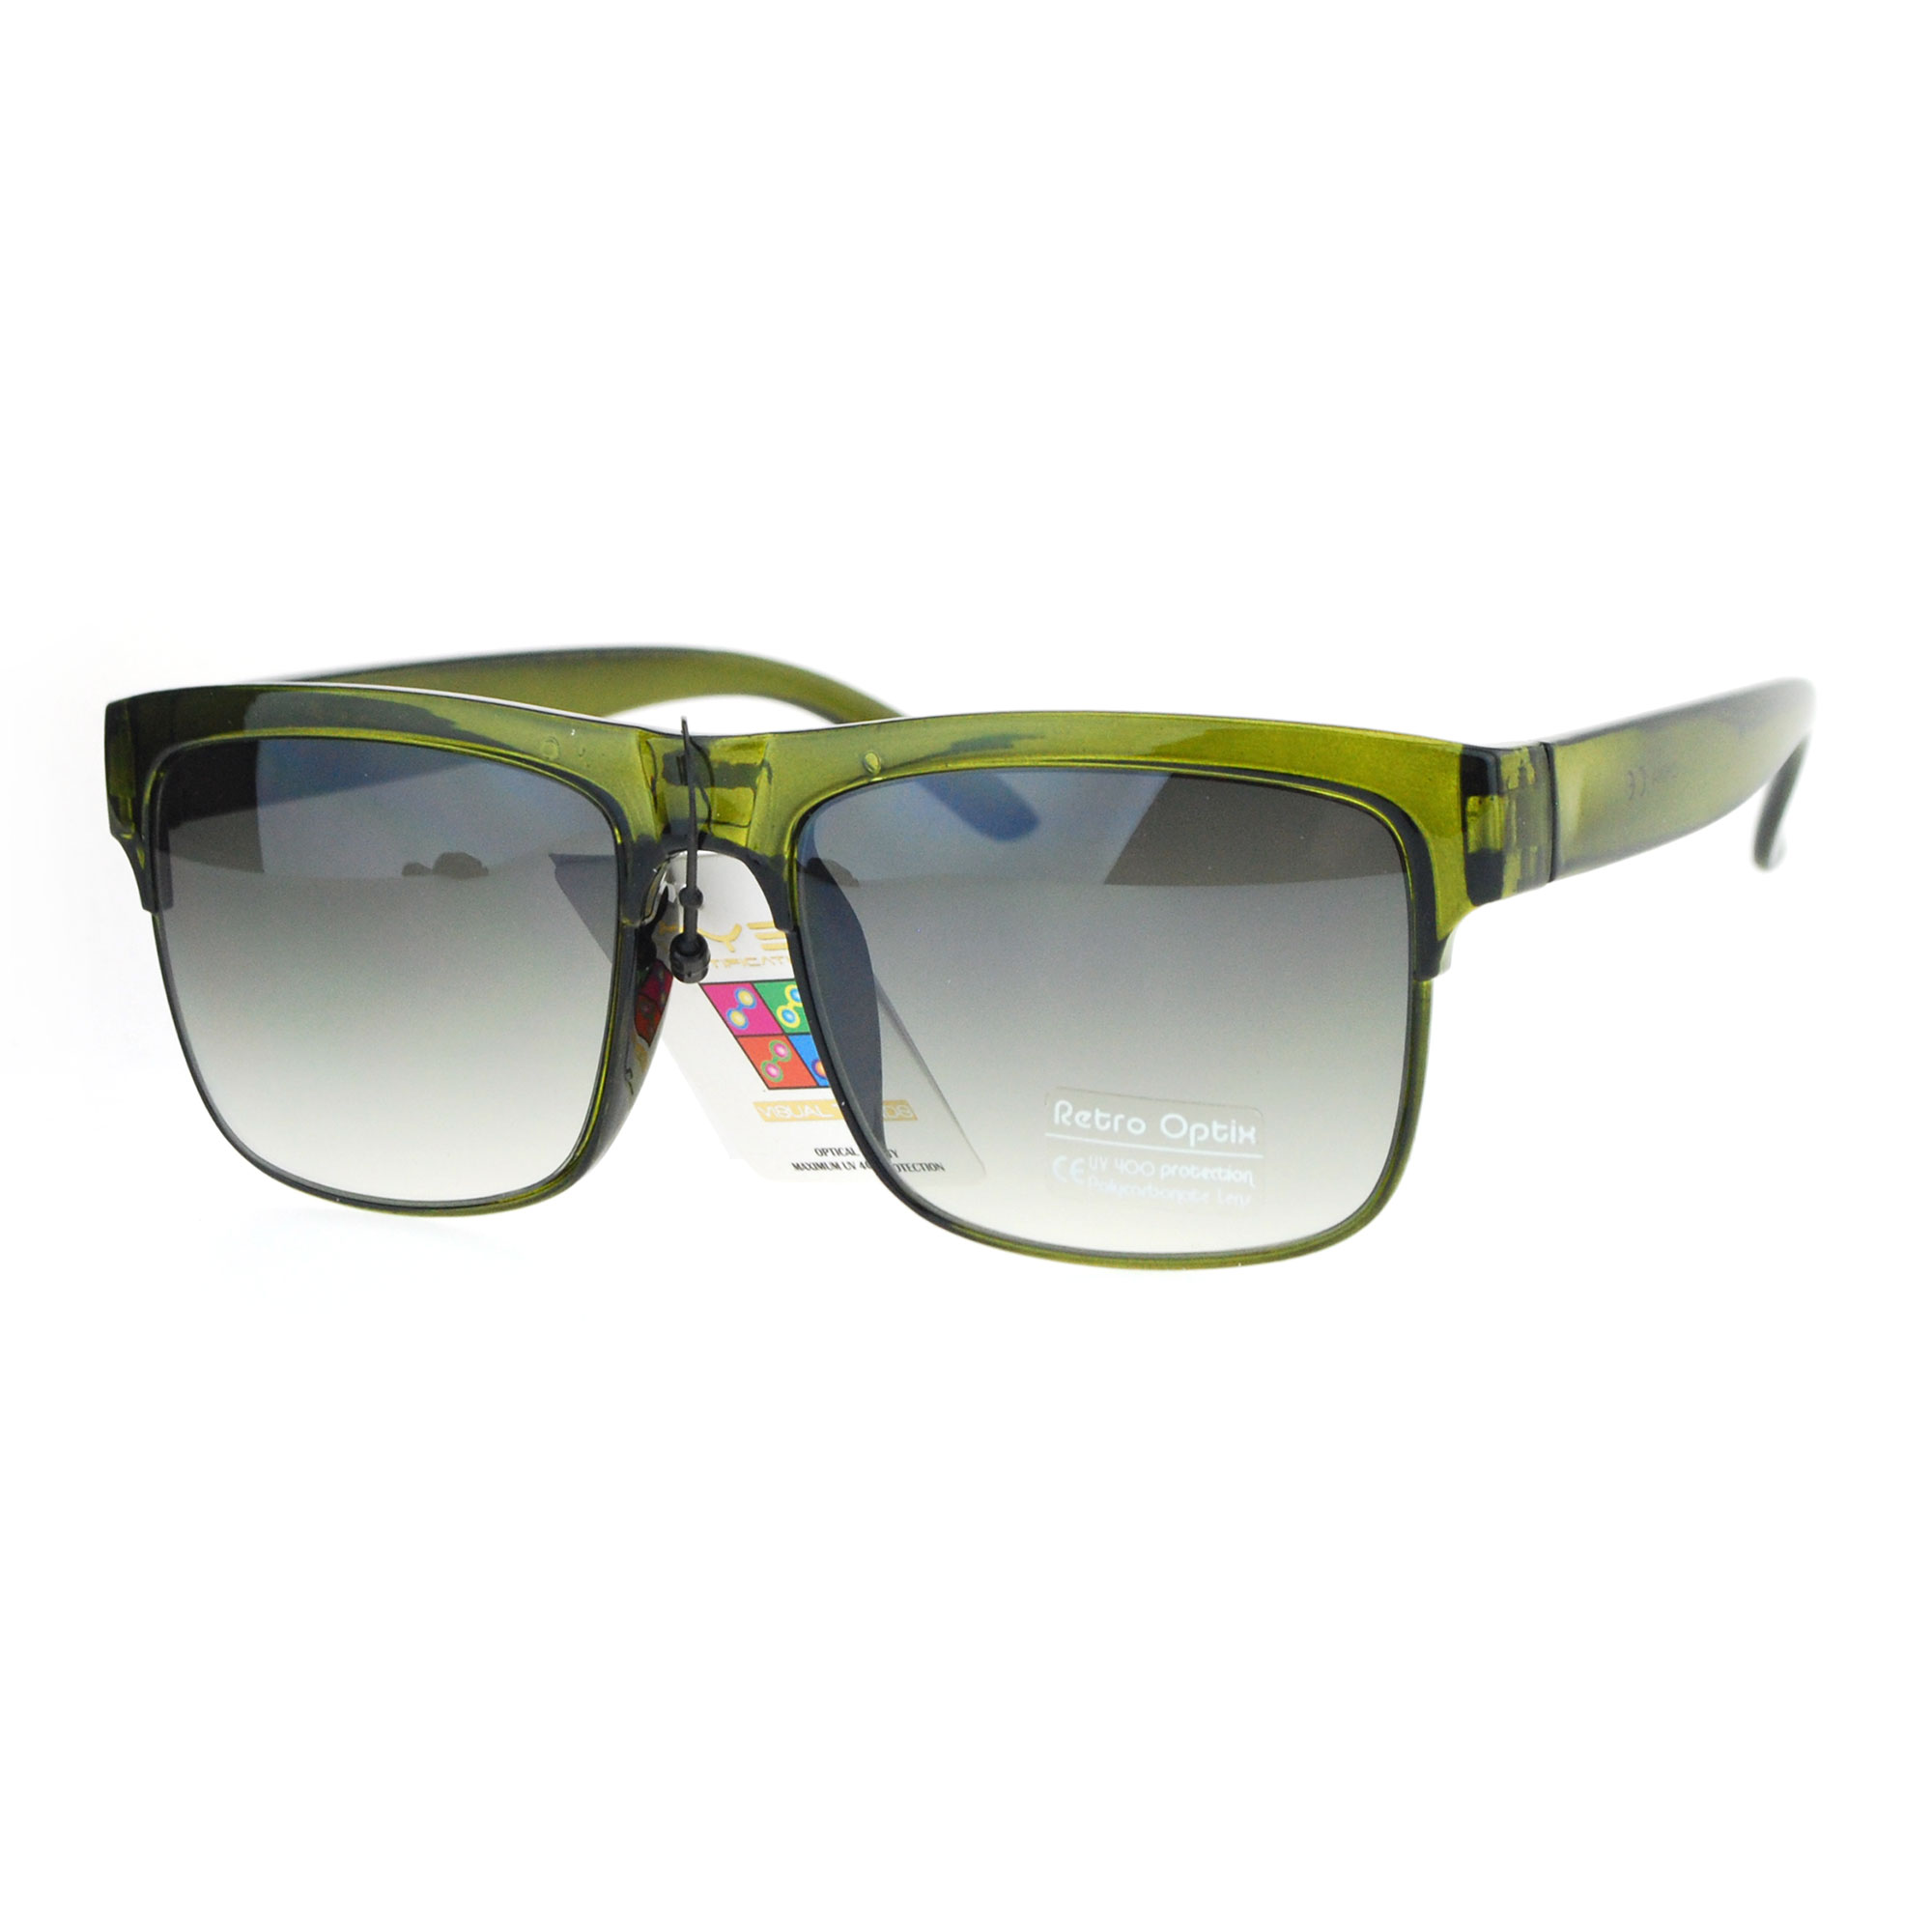 Mens Oversize Rectangular Half Horn Rim Color Mirror Lens Hipster Sunglasses Ebay